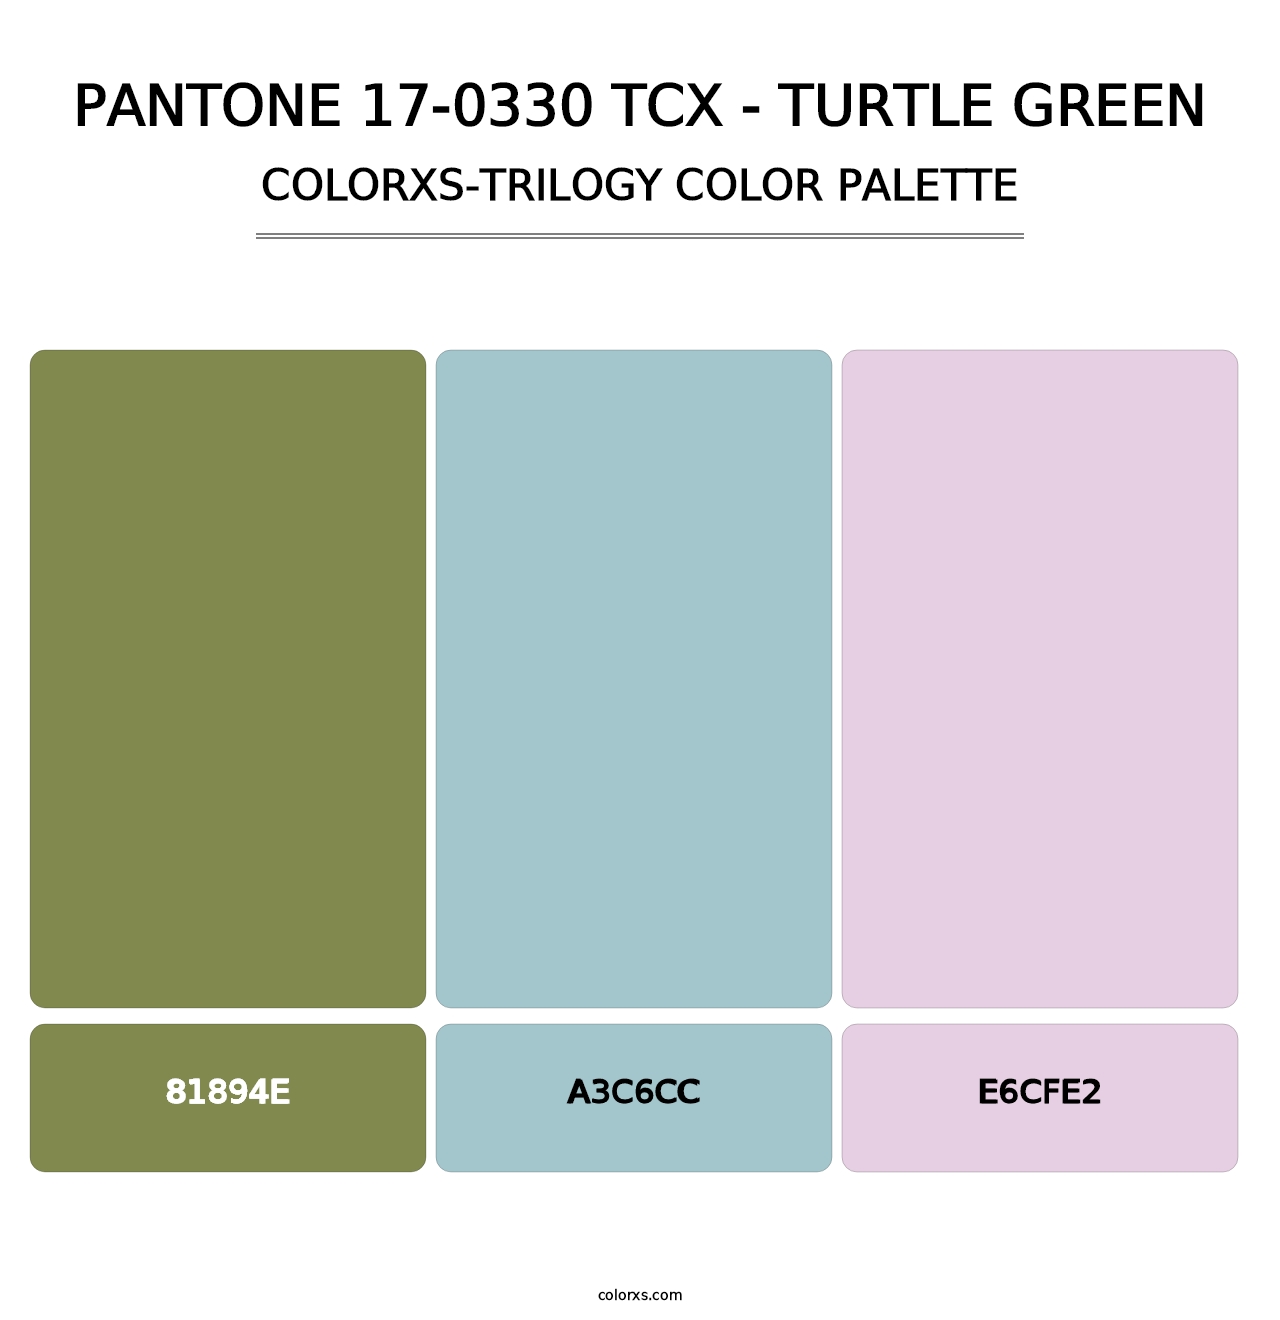 PANTONE 17-0330 TCX - Turtle Green - Colorxs Trilogy Palette